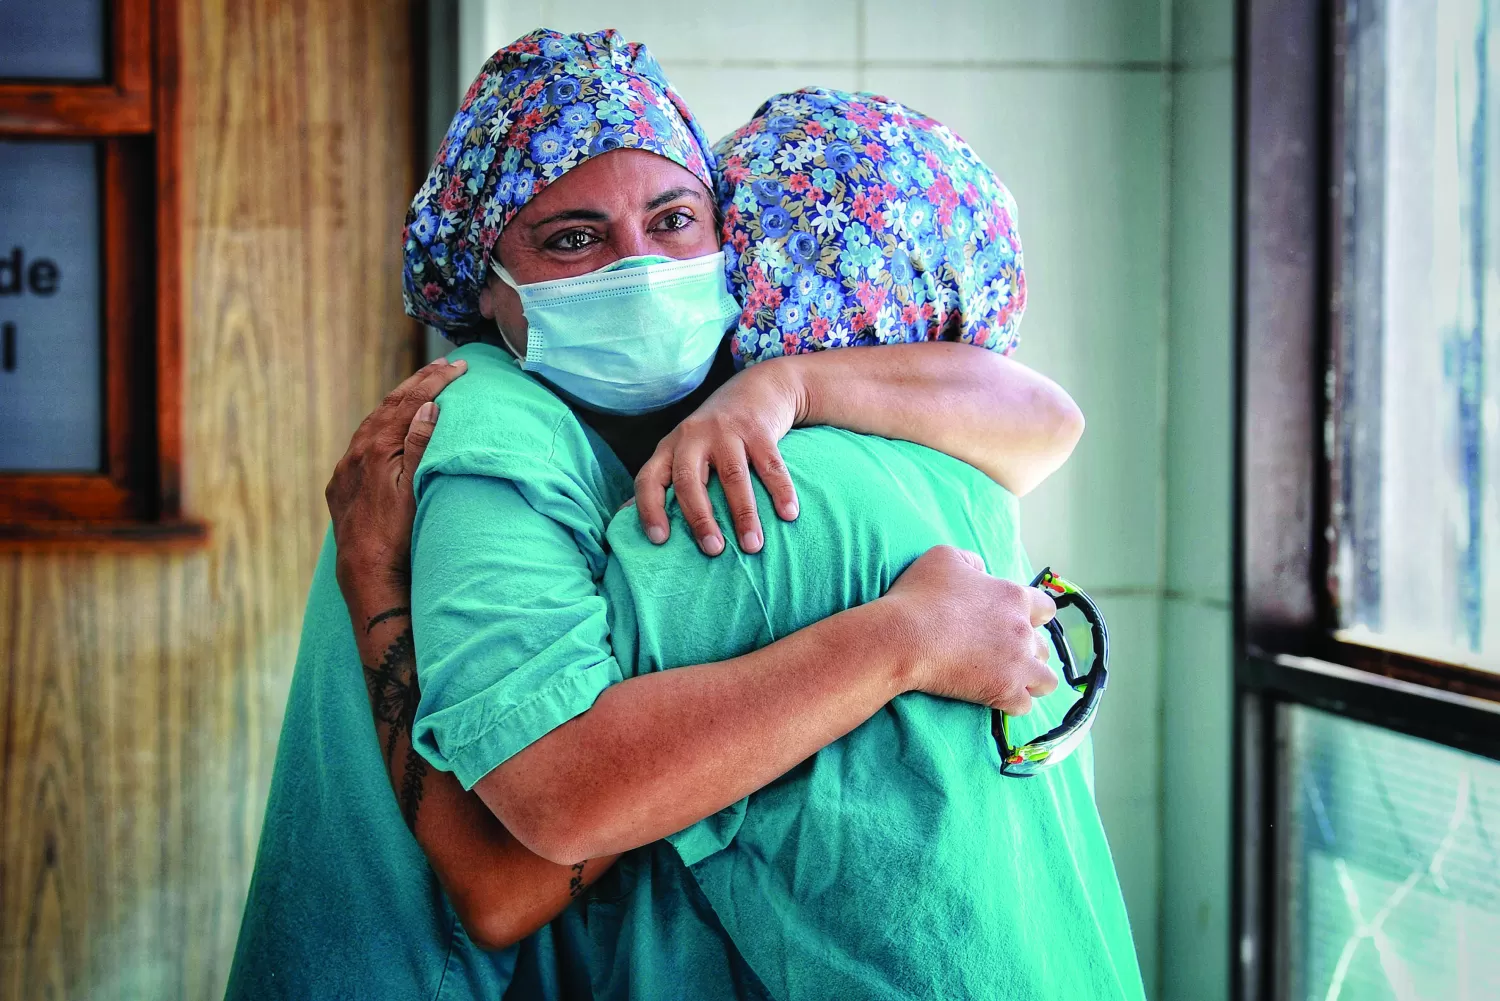 IMÁGENES DE LA MUESTRA. Las enfermeras Romina Quevedo y Florencia Rumi Macchi Zubiaurre se abrazan al recordar a los colegas fallecidos a causa del coronavirus. Foto de Hernán Foulliet, Gentileza de aRGra